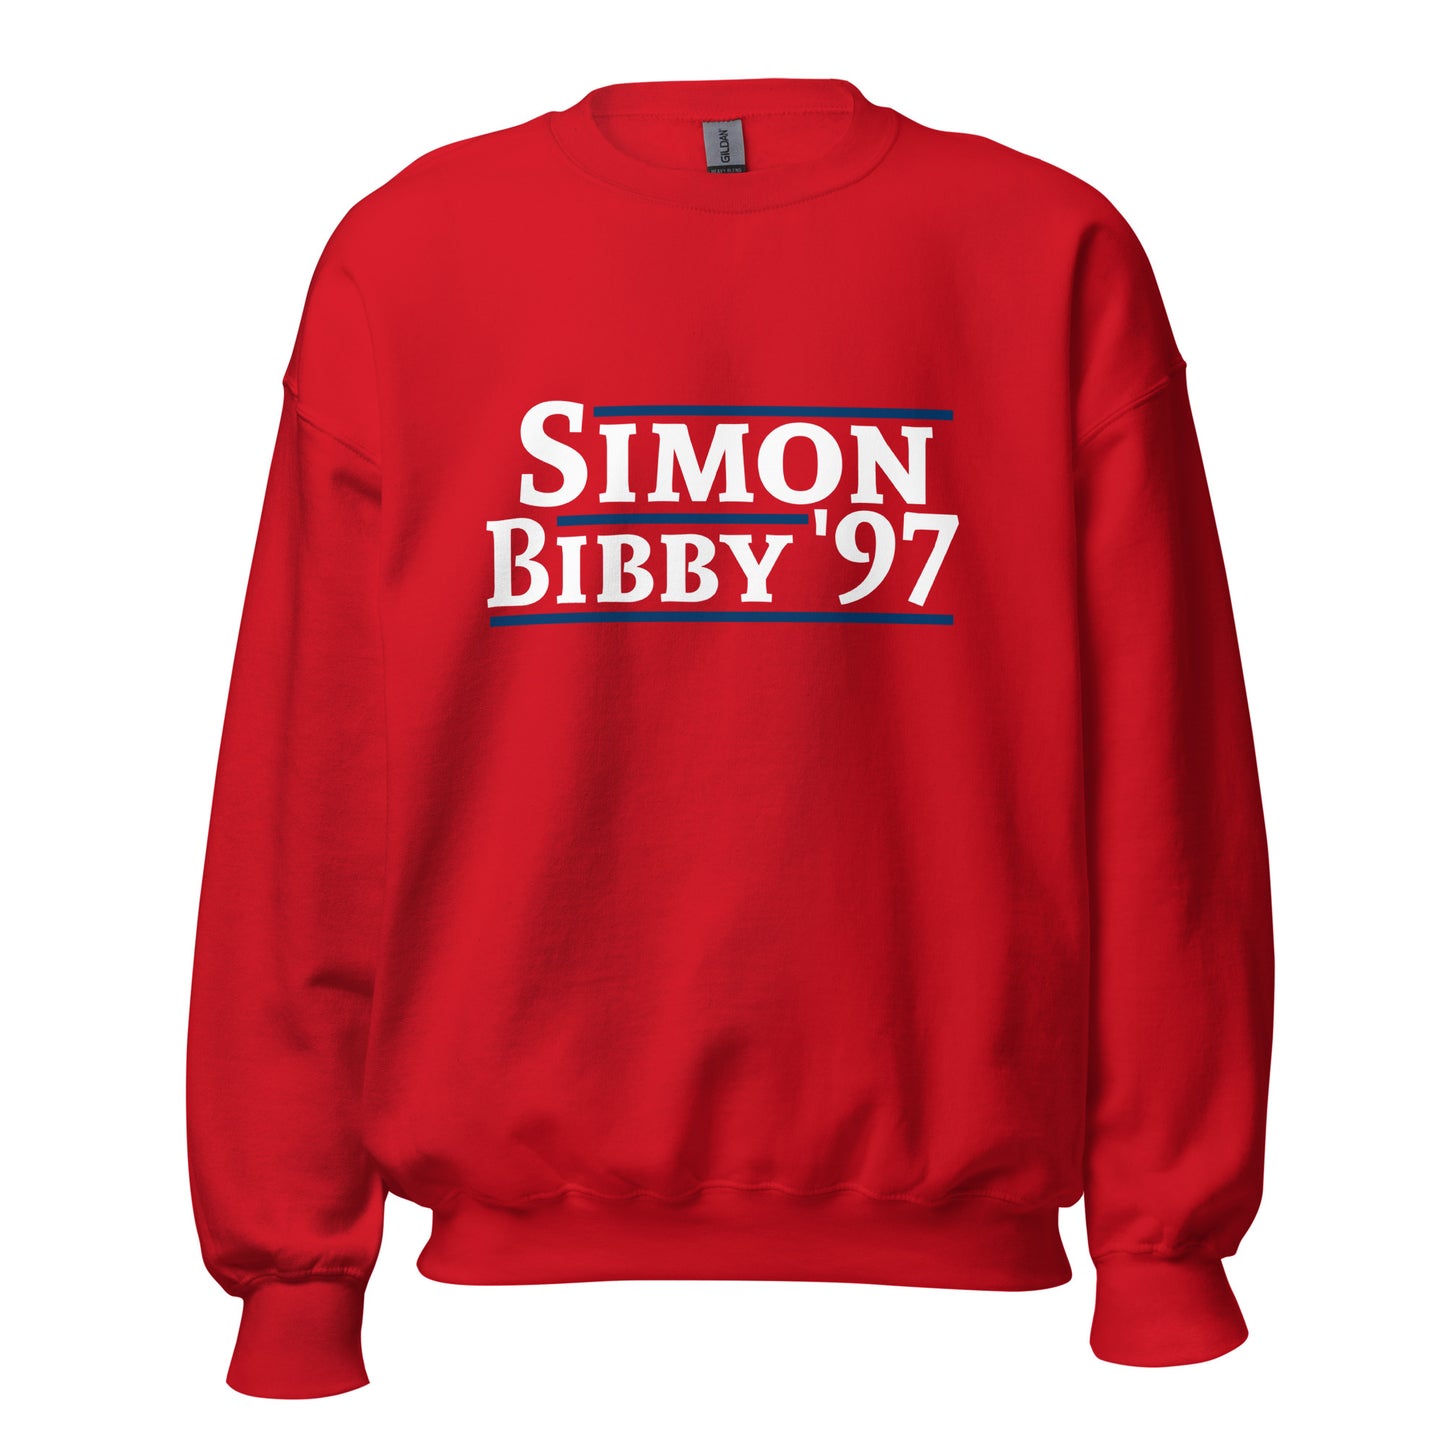 Simon/Bibby '97 - Unisex Sweatshirt